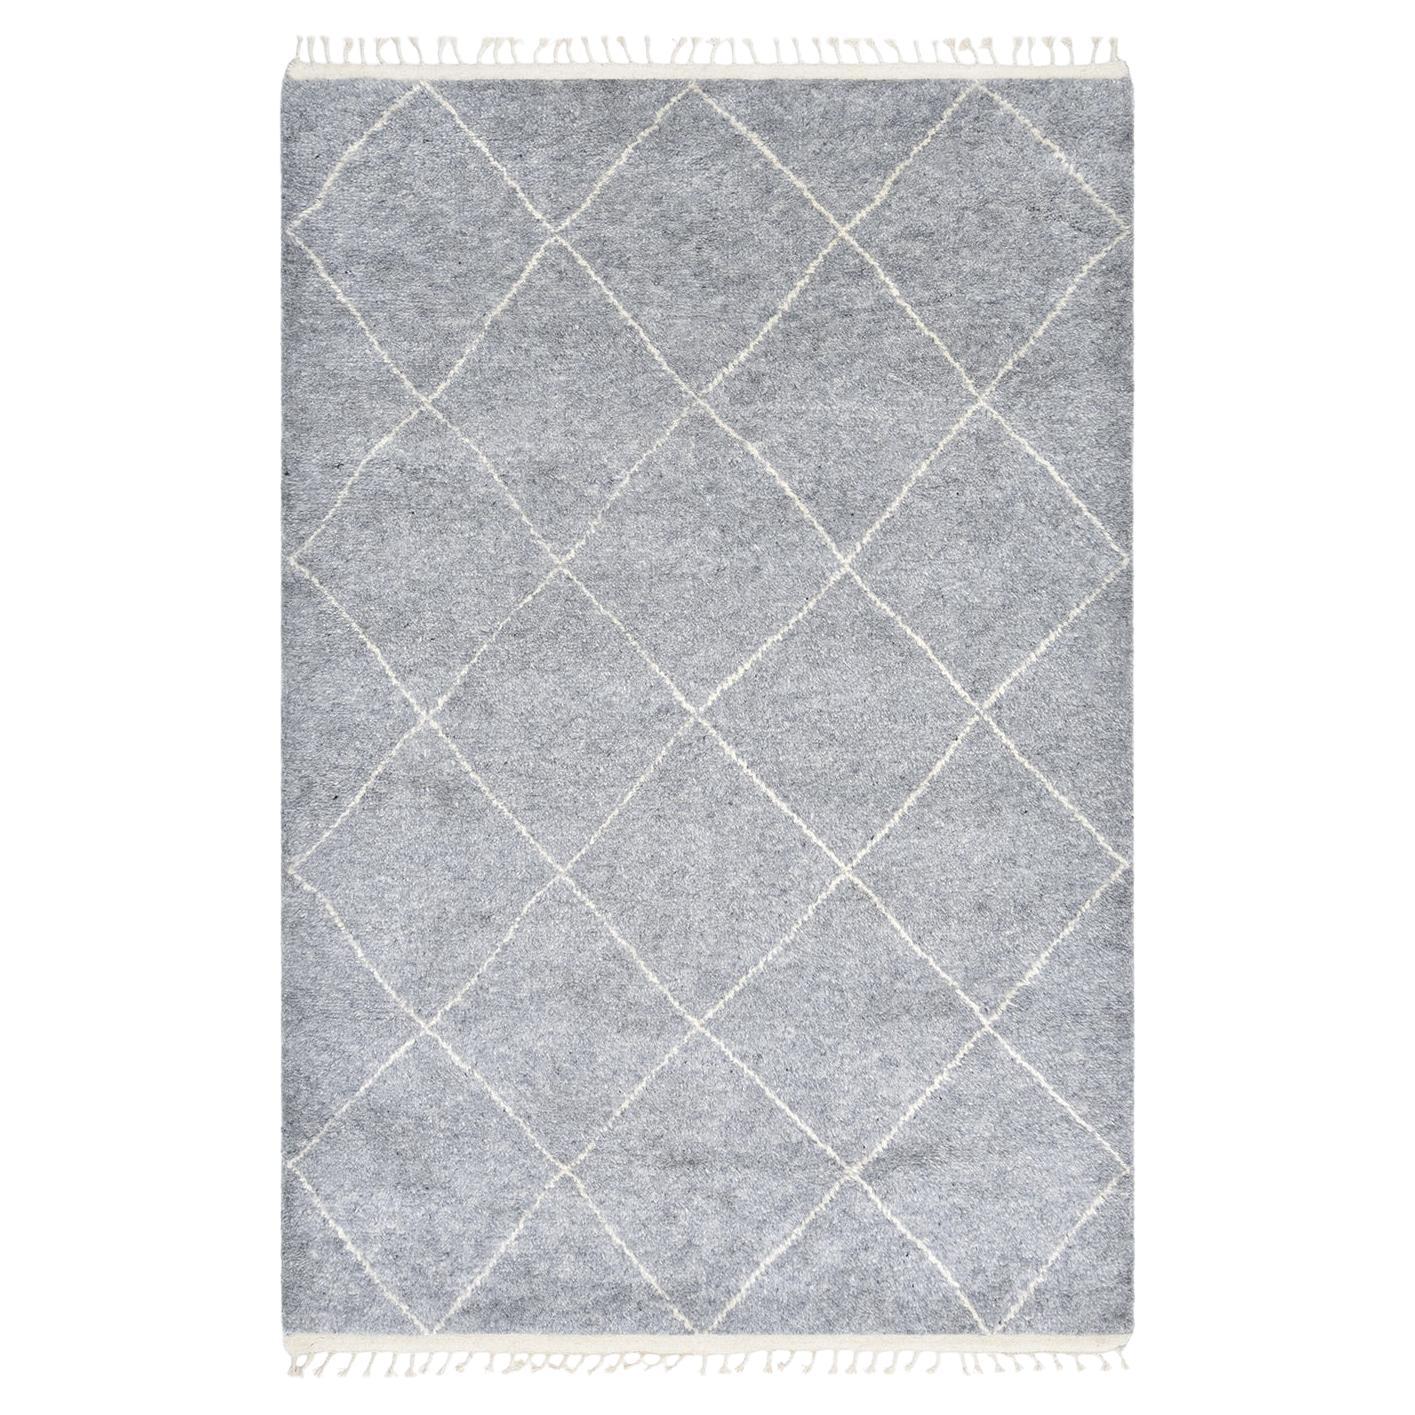 Marokkanischer handgeknüpfter grauer 9 x 12 Teppich mit Solo-Muster